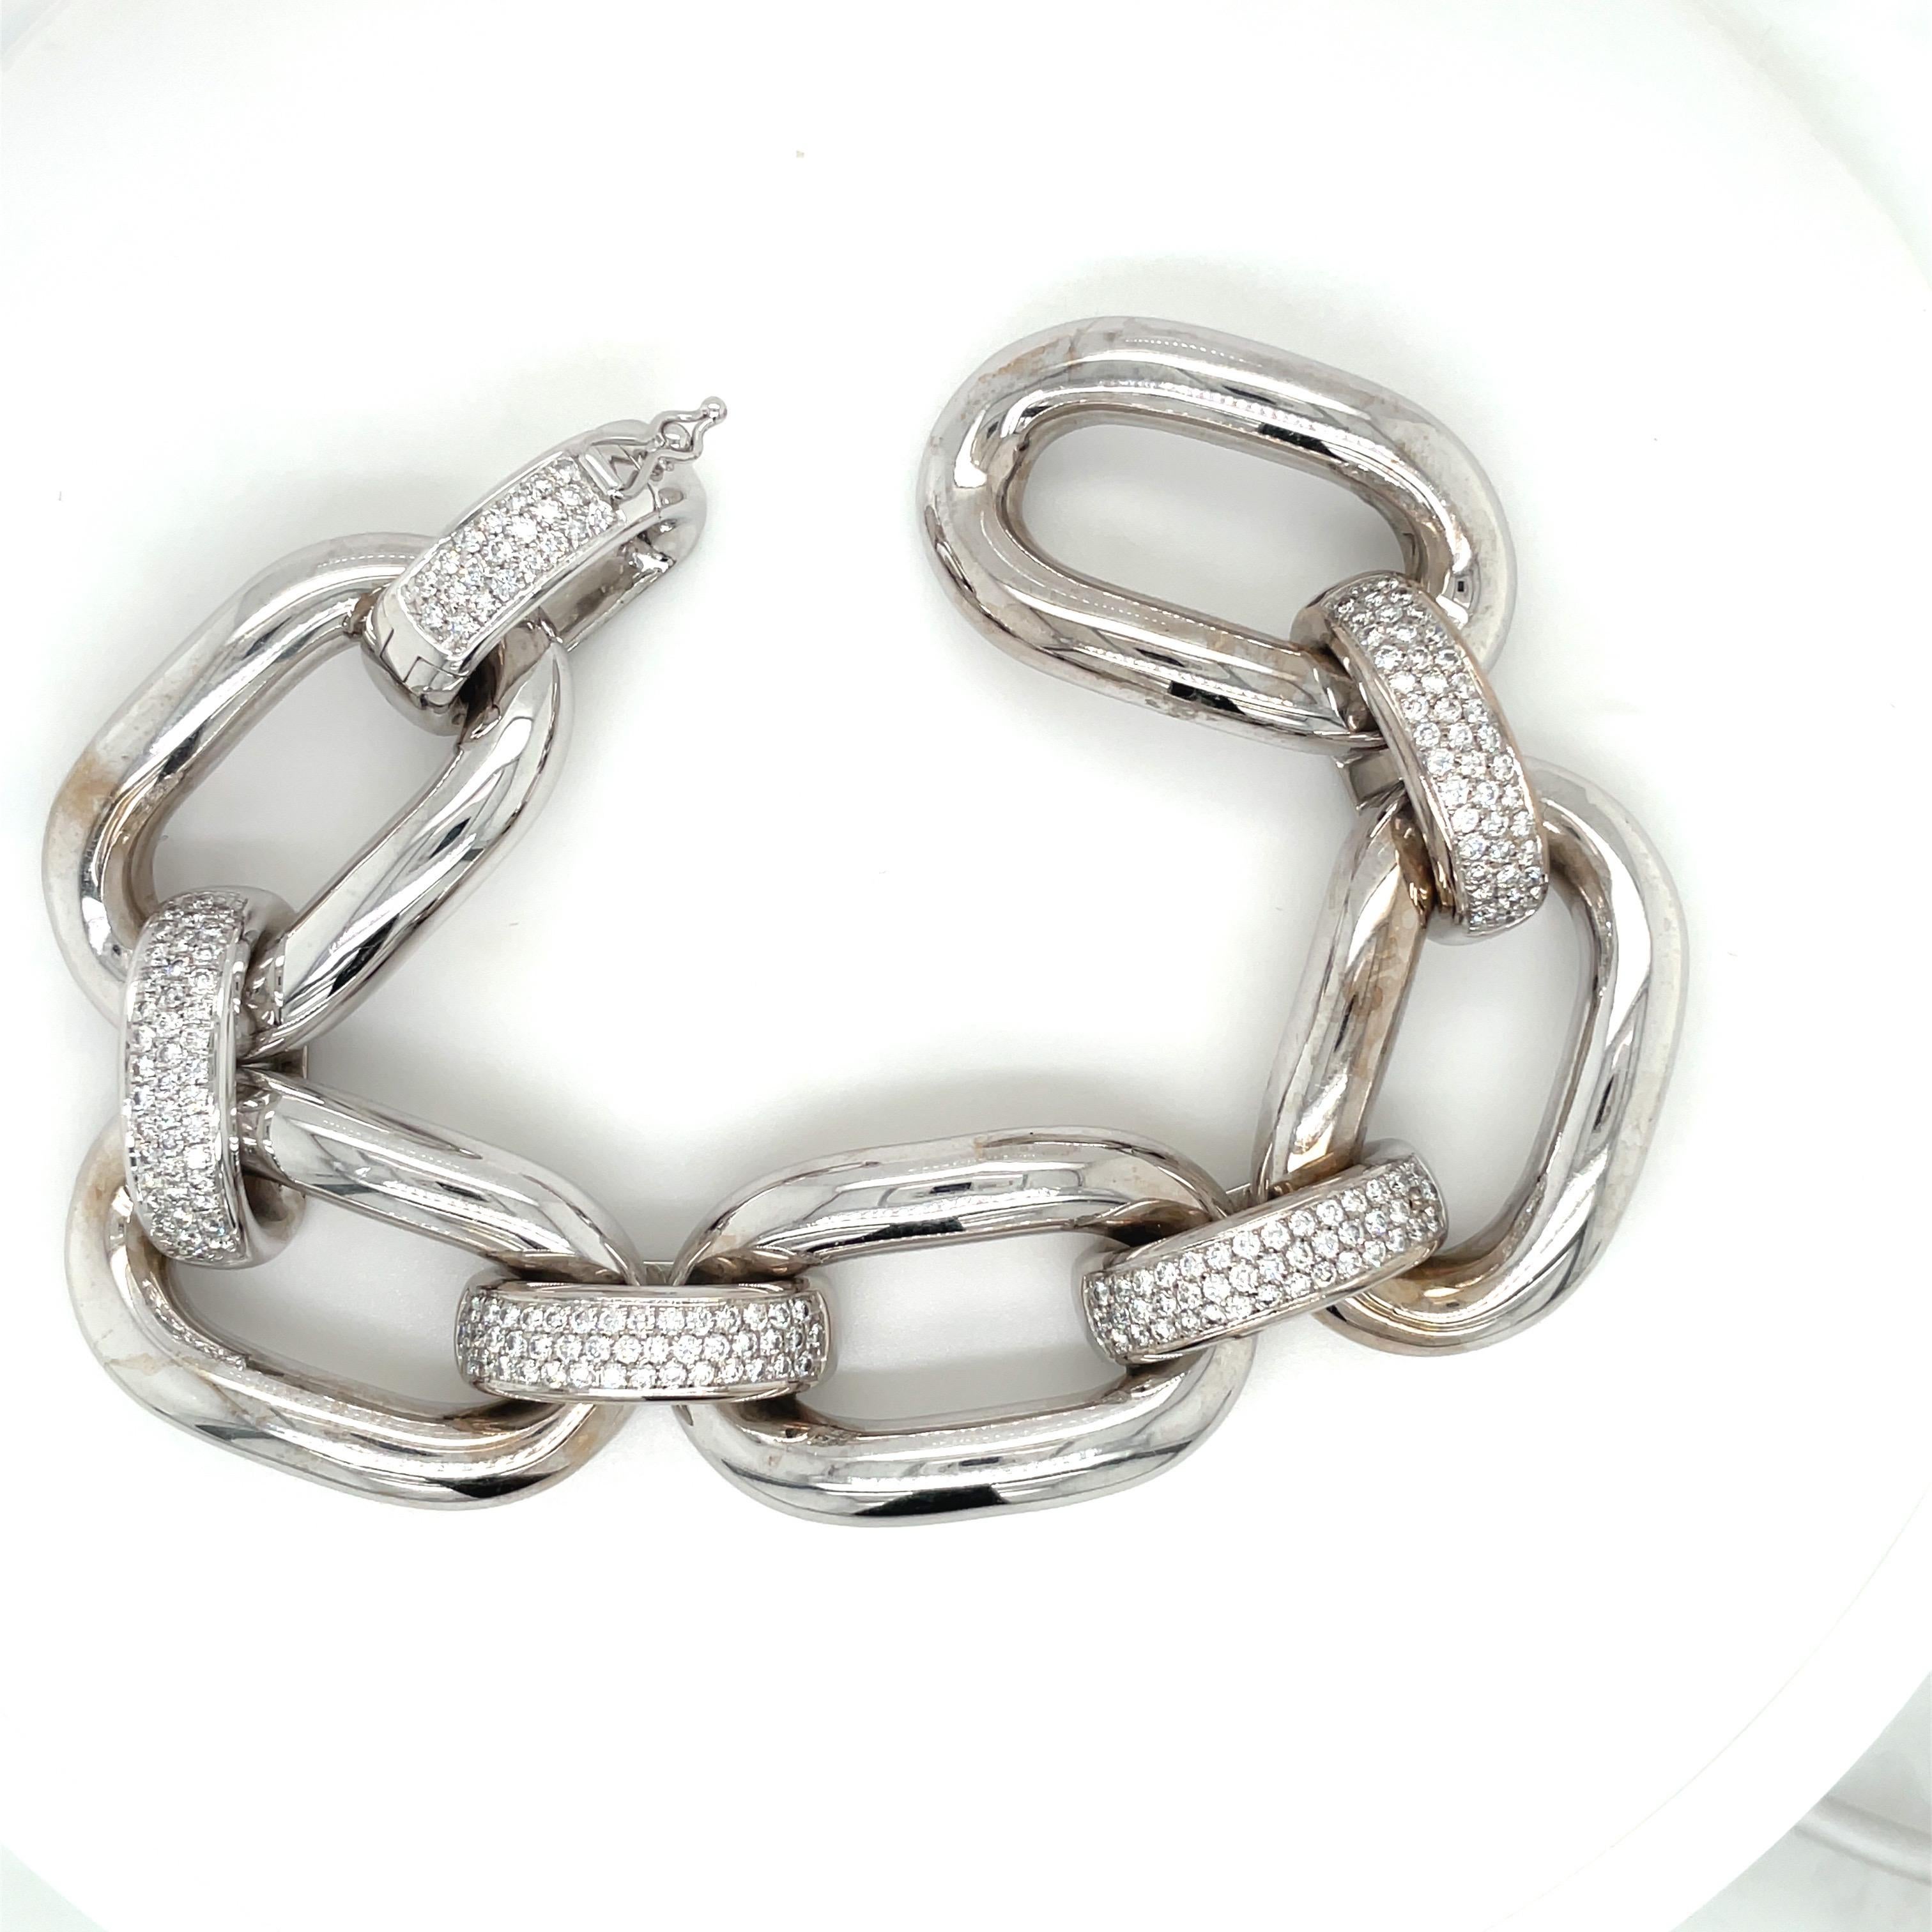 bracelet en or blanc 18 carats conçu avec 5 maillons ovales et 5 connecteurs en diamant pavé. Le bracelet mesure 8